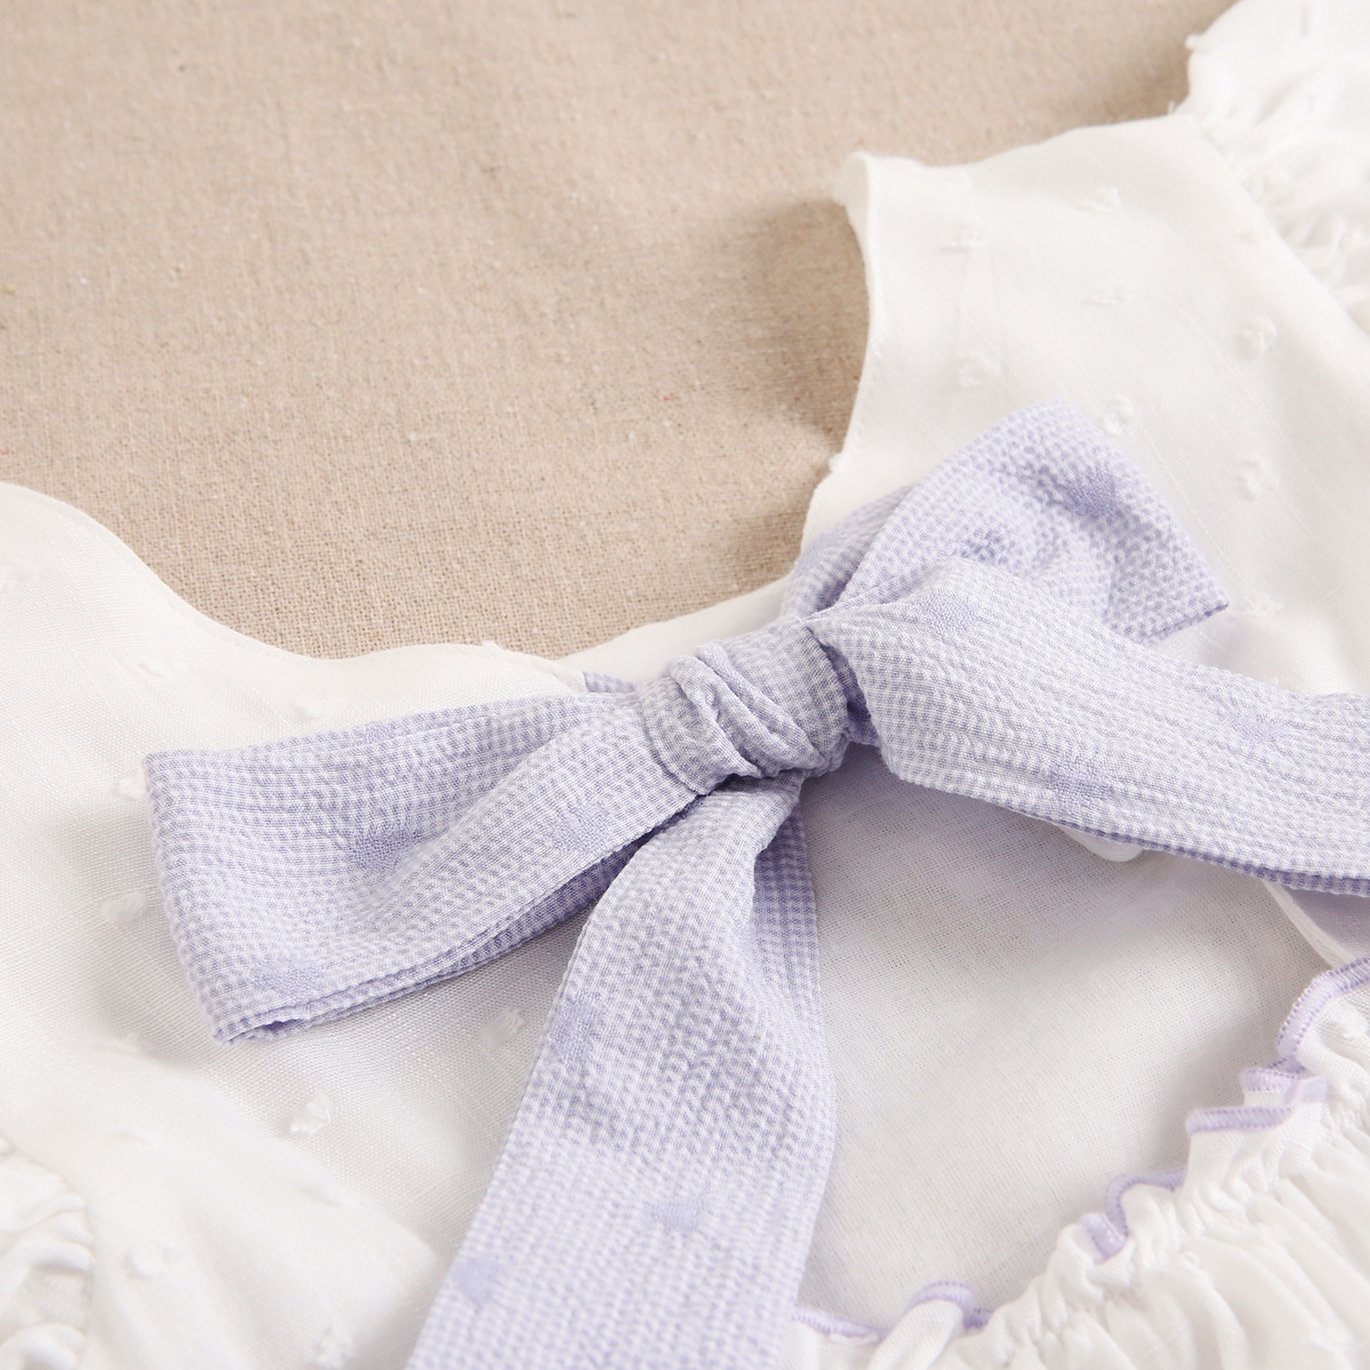 Imagen de Vestido de niña blanco plumeti con ribetes lilas